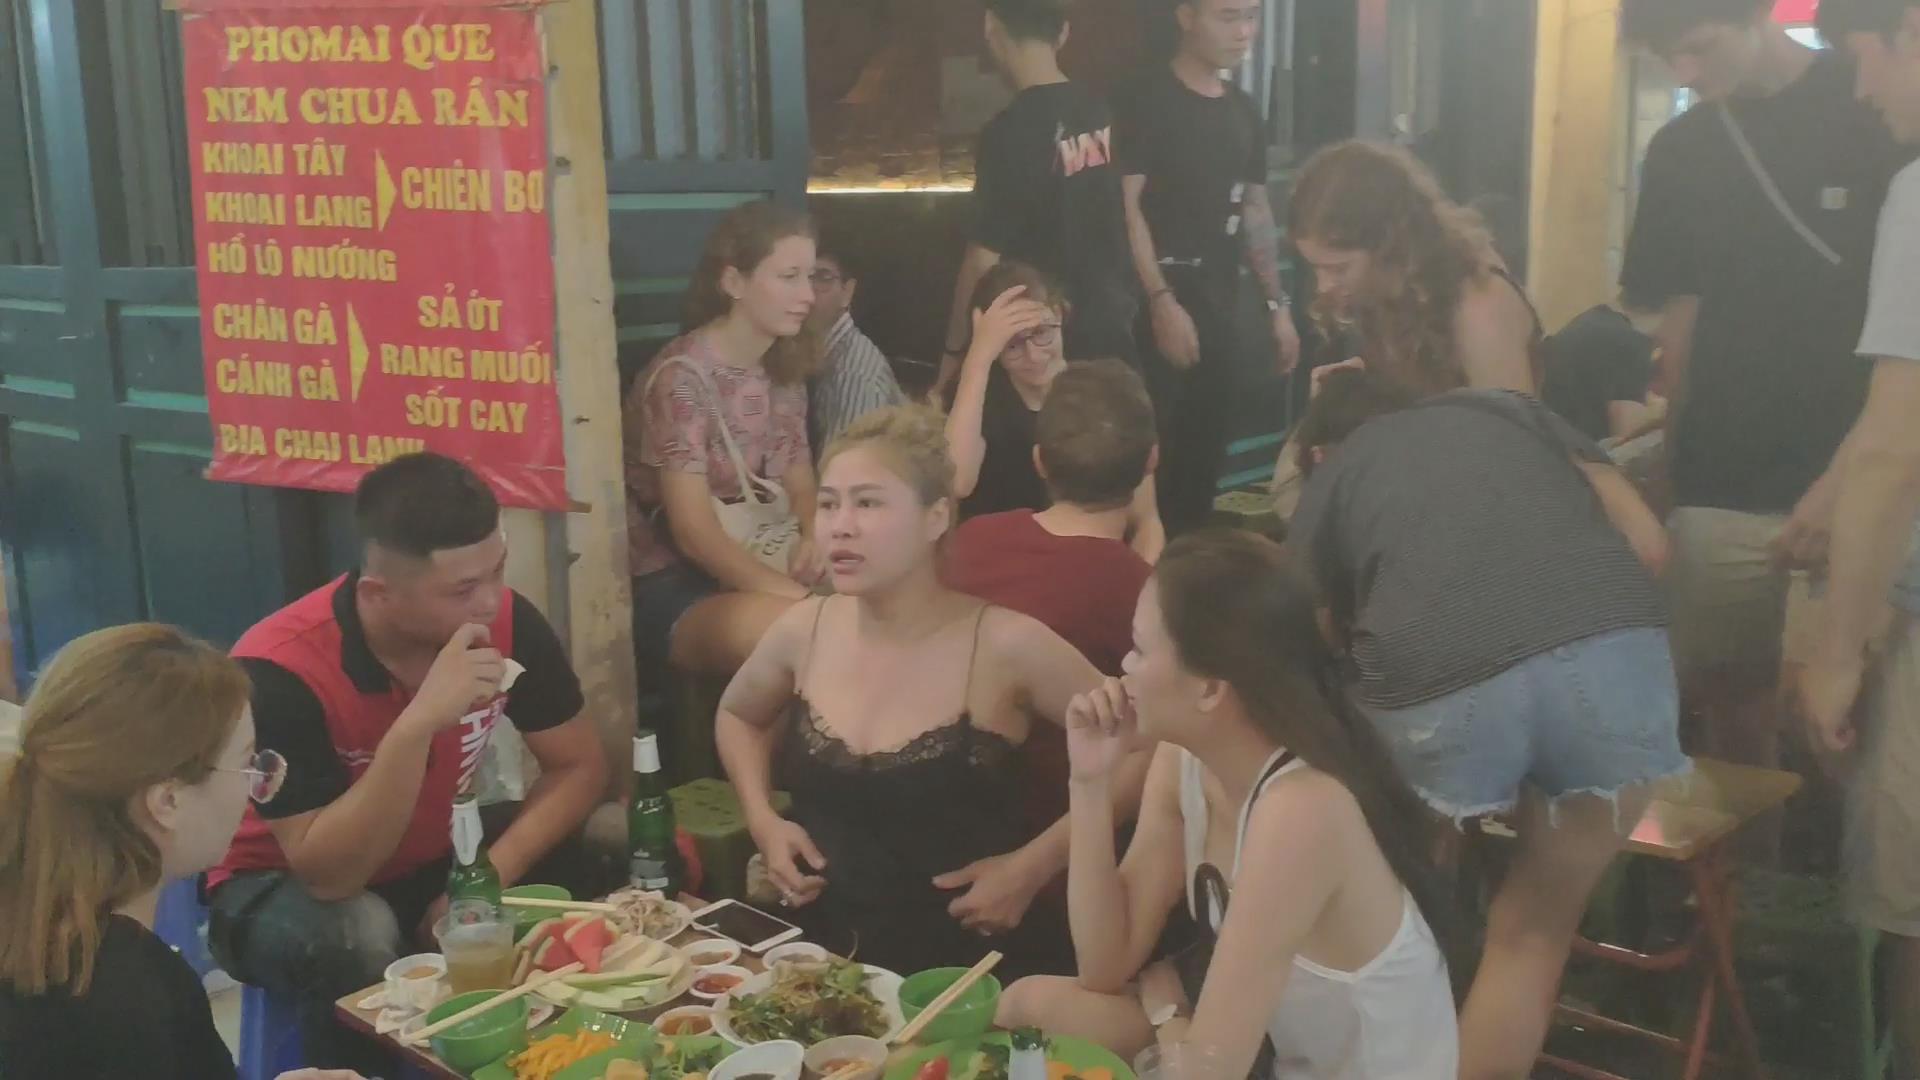 上海越南女孩多的酒吧图片